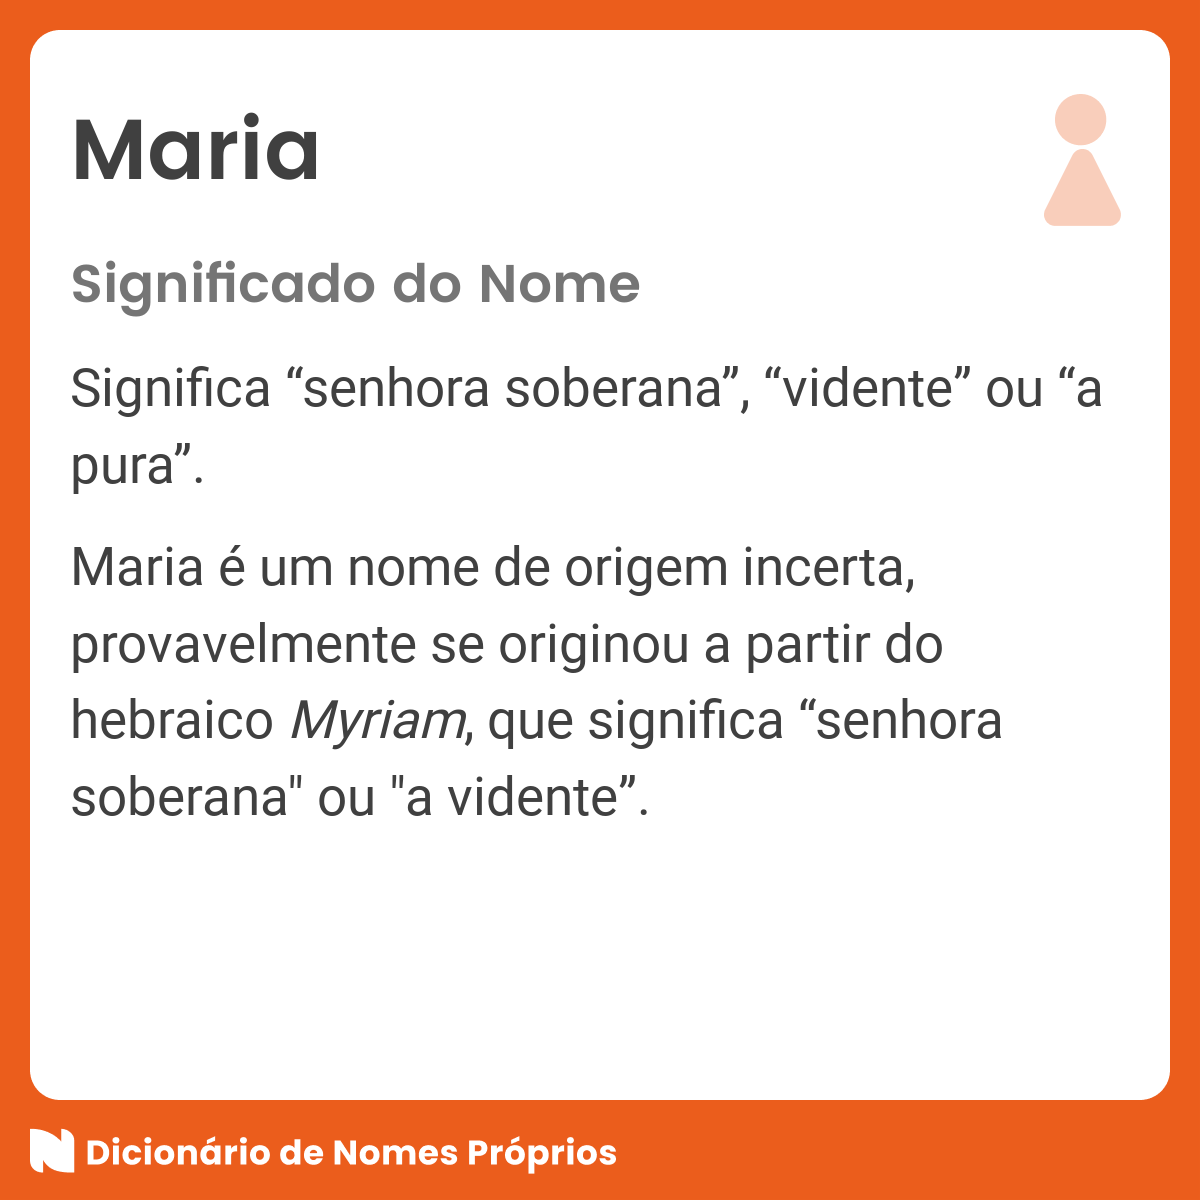 Significado do nome Maria - Dicionário de Nomes Próprios